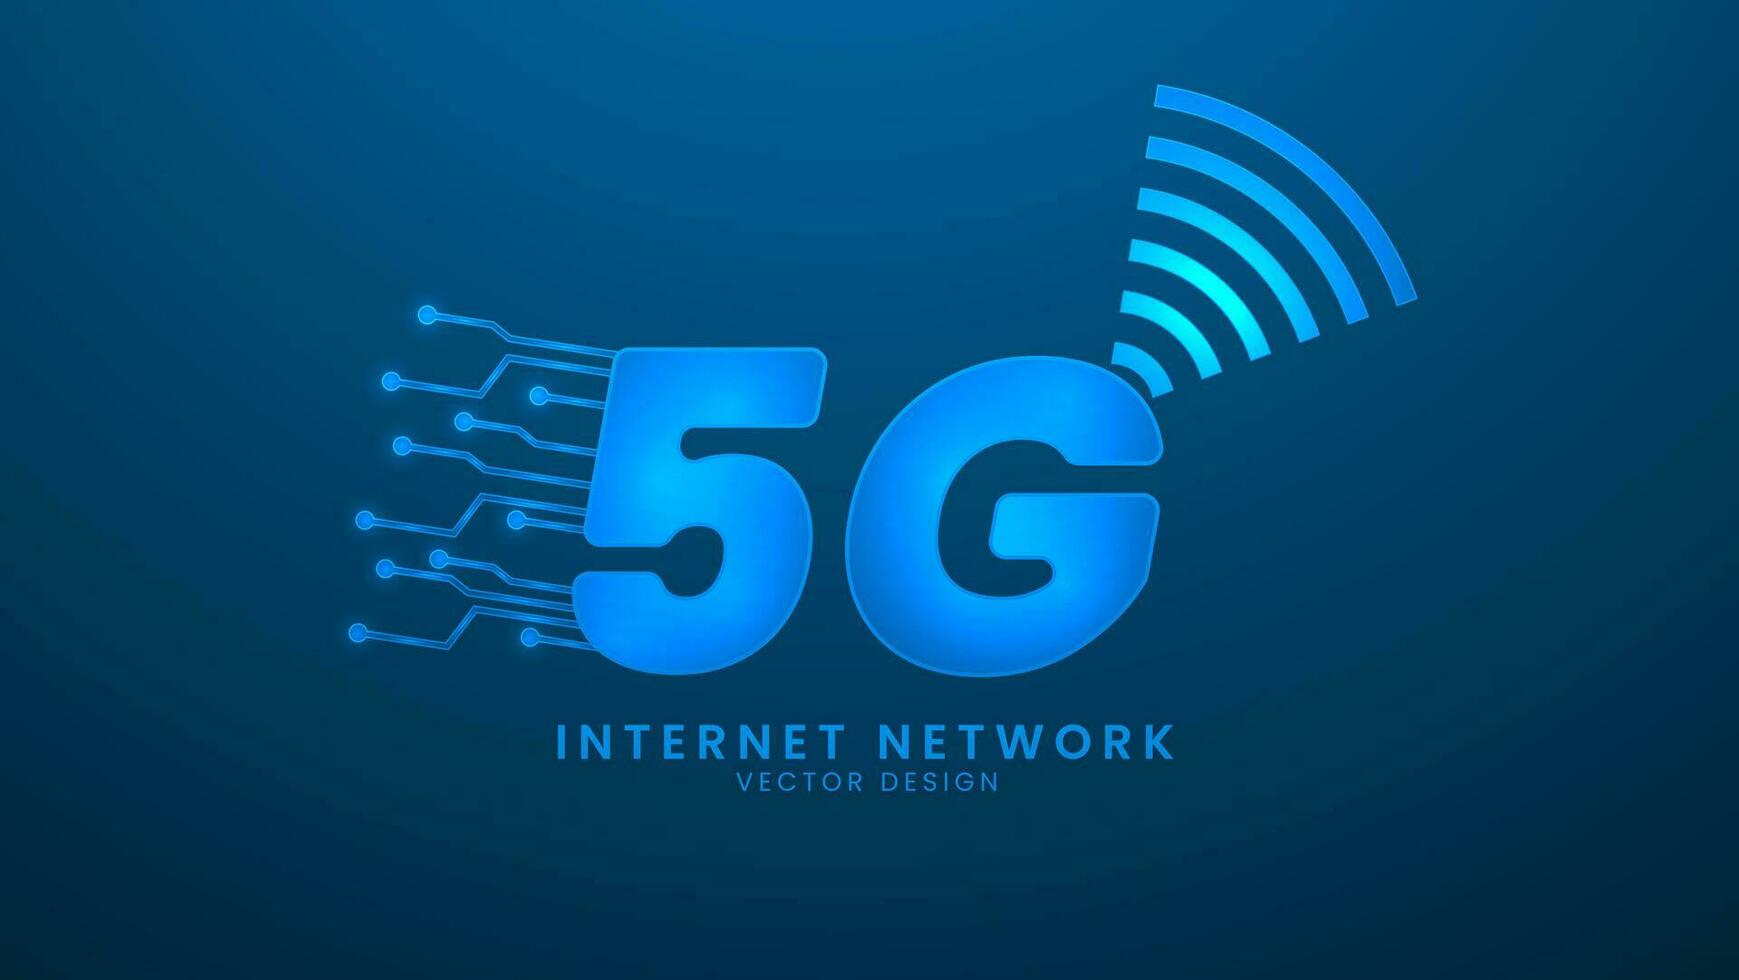 5g Internet Netzwerk. Kommunikation Netzwerke und hoch Geschwindigkeit Telekommunikation. Vektor Illustration mit Licht bewirken und Neon-